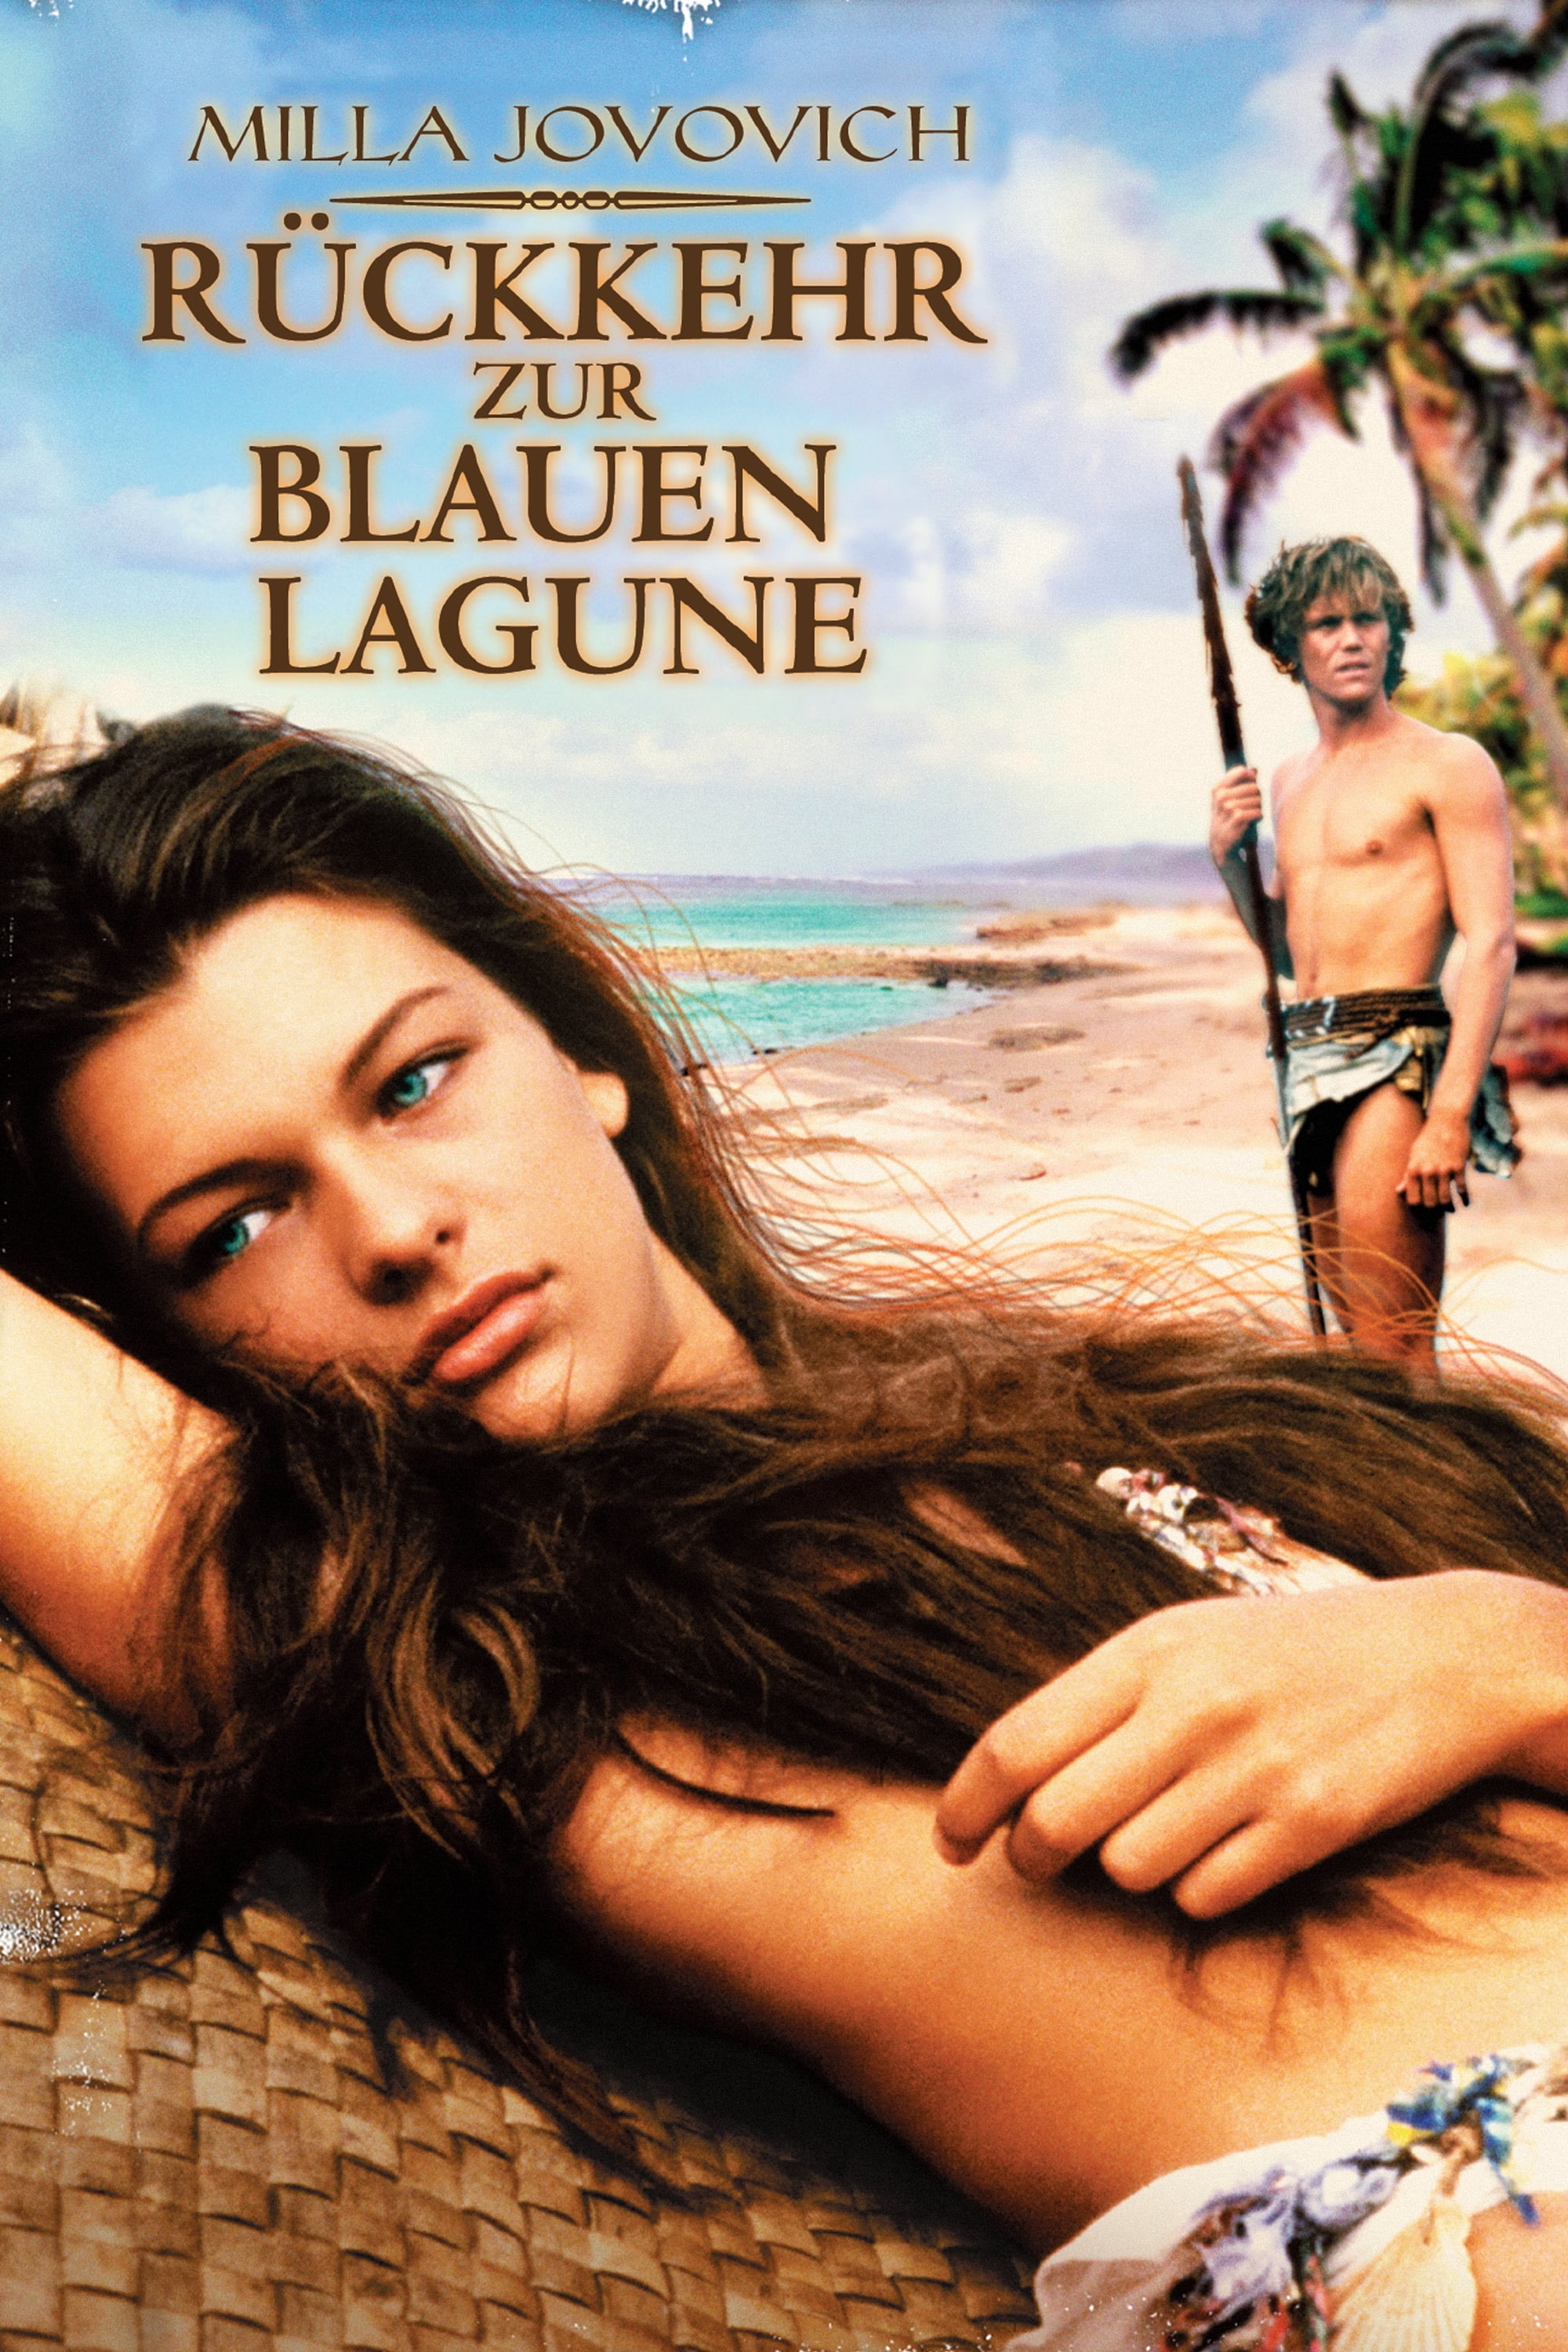 Plakat von "Rückkehr zur blauen Lagune"